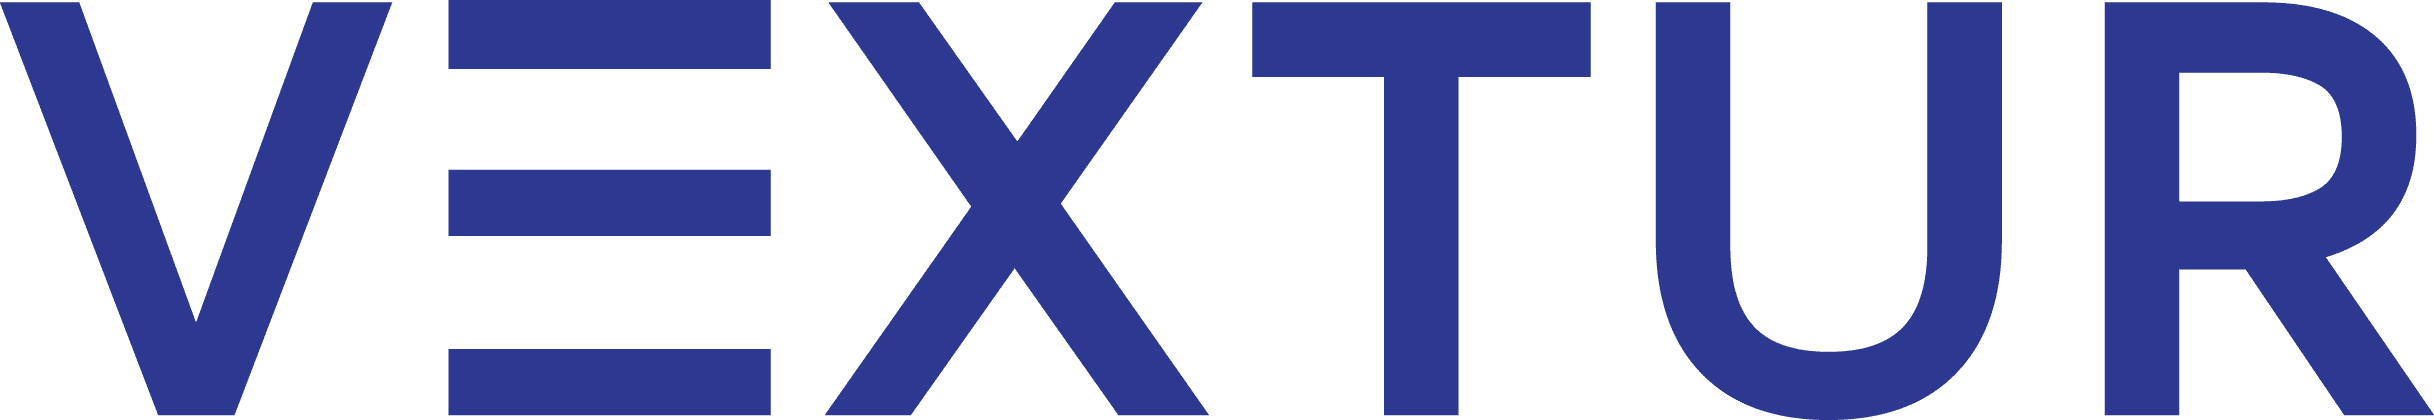 Vextur Logo White